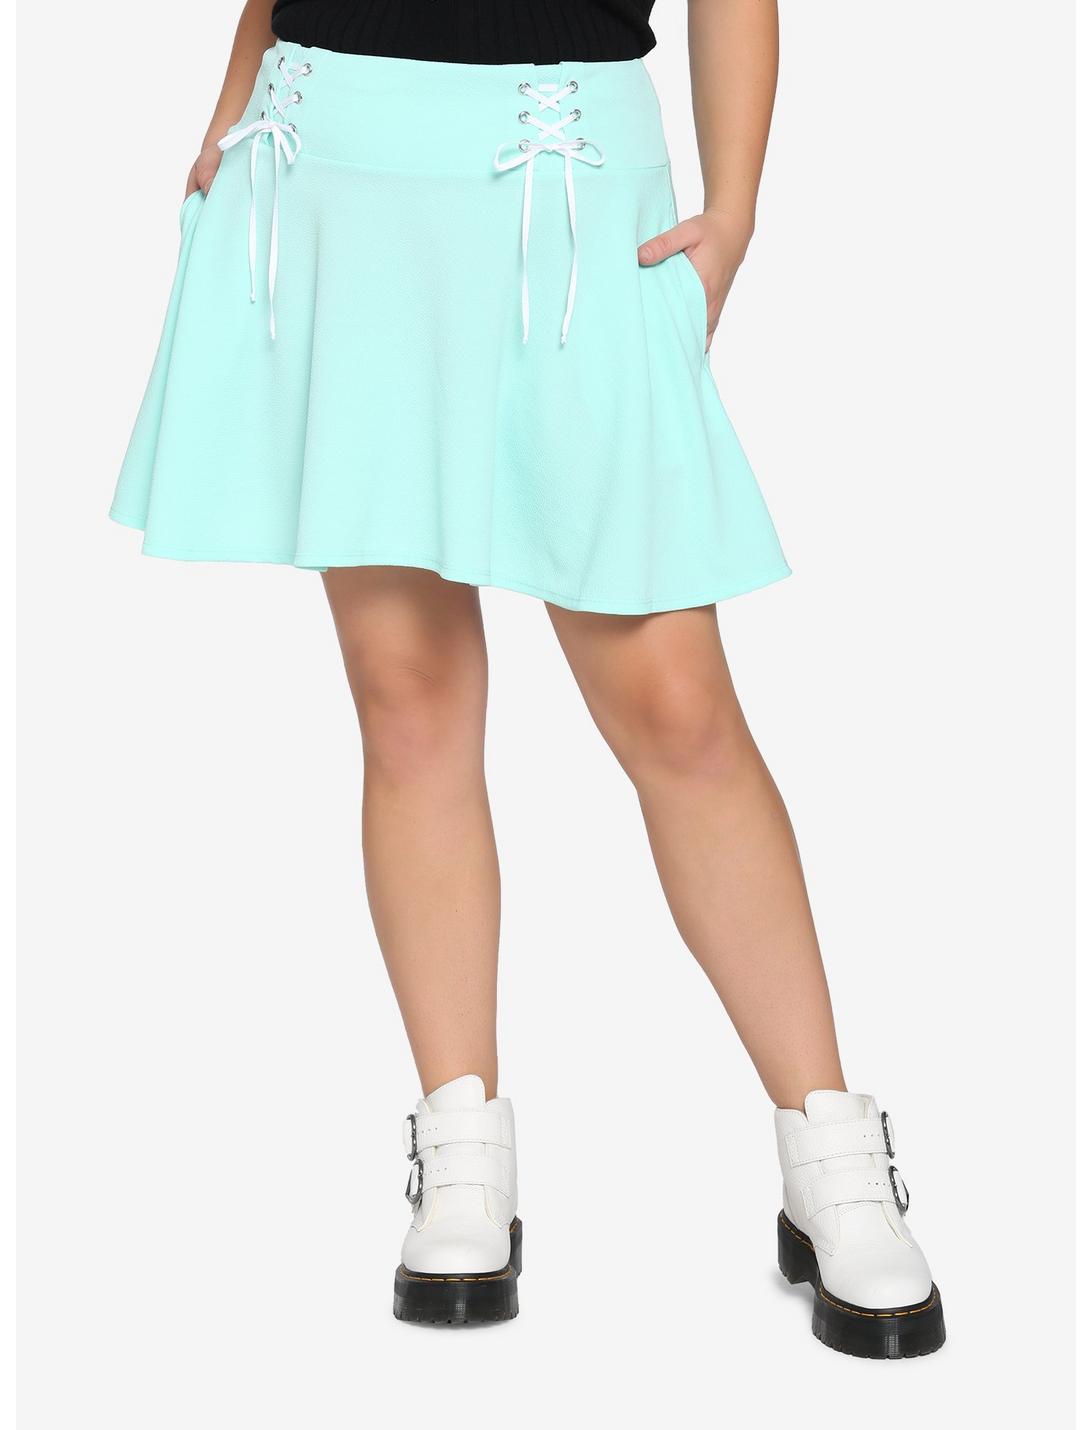 Mint Yoke Lace-Up Skirt Plus Size, MINT, hi-res